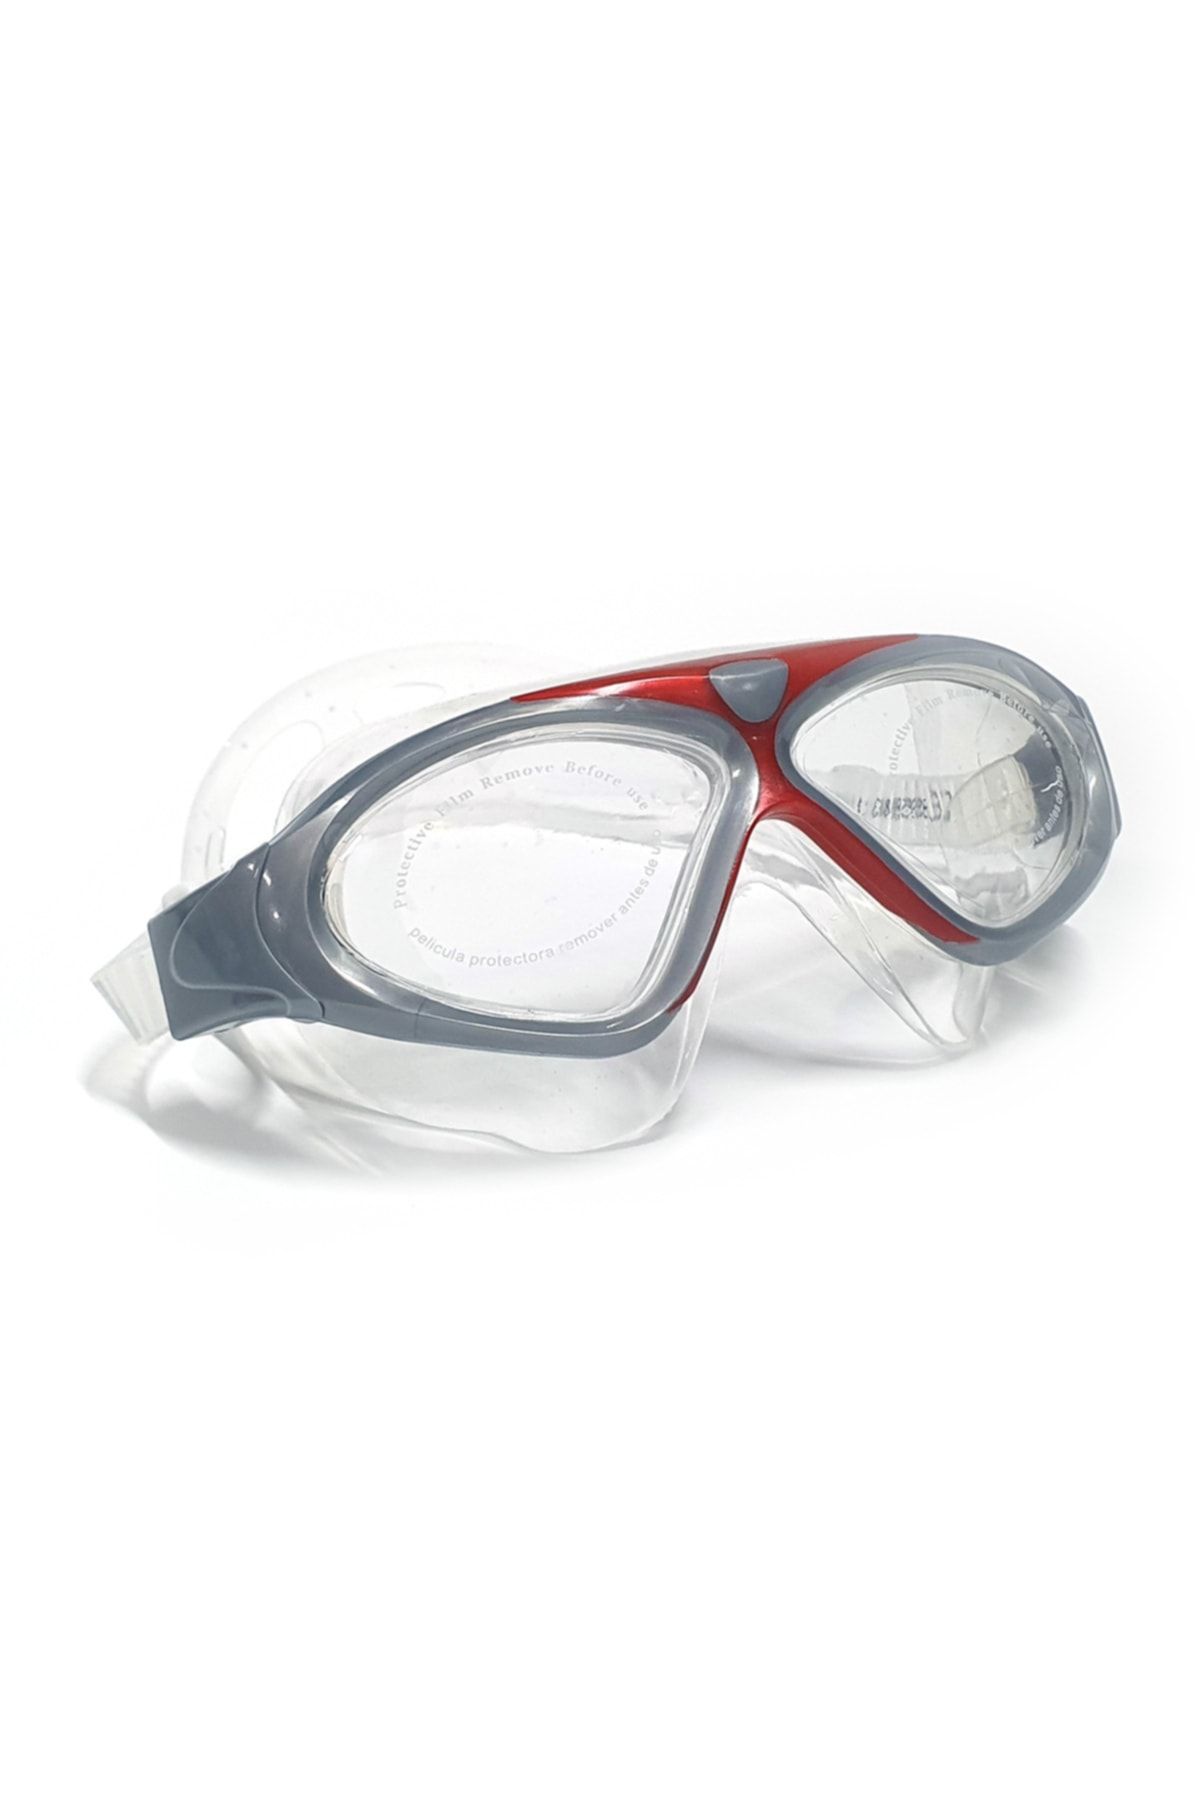 Tosima Yetişkin Havuz Gözlüğü Yüzücü Gözlüğü Deniz Gözlüğü Su Almaz Vakum Tasarım